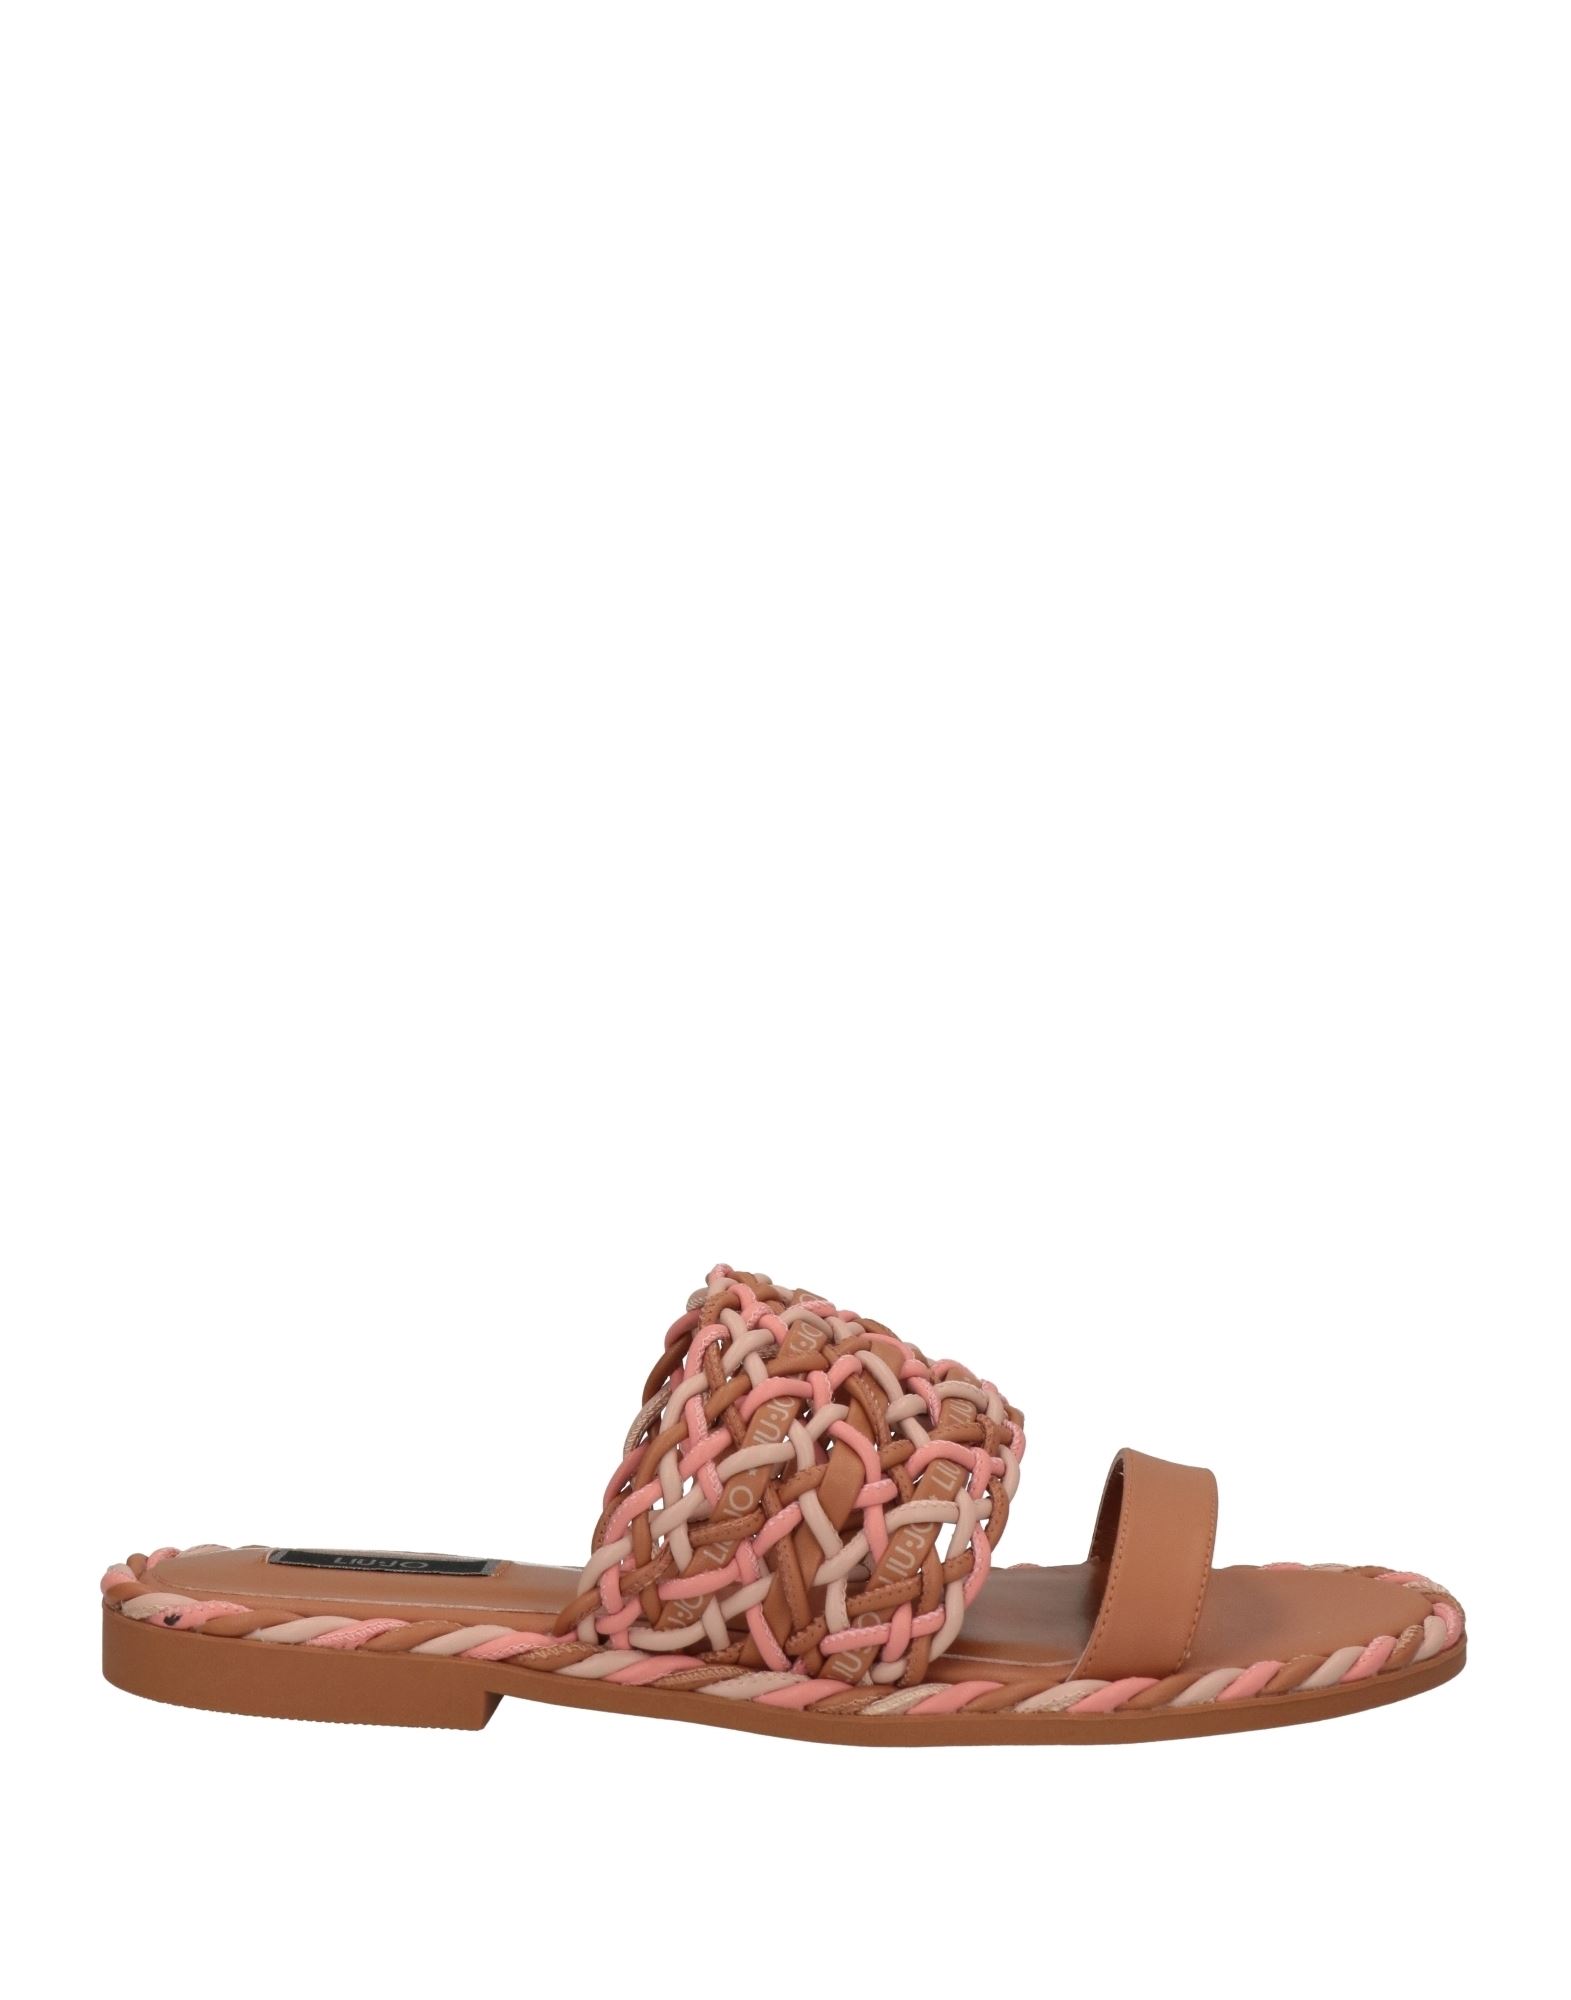 Liu •jo Sandals In Brown